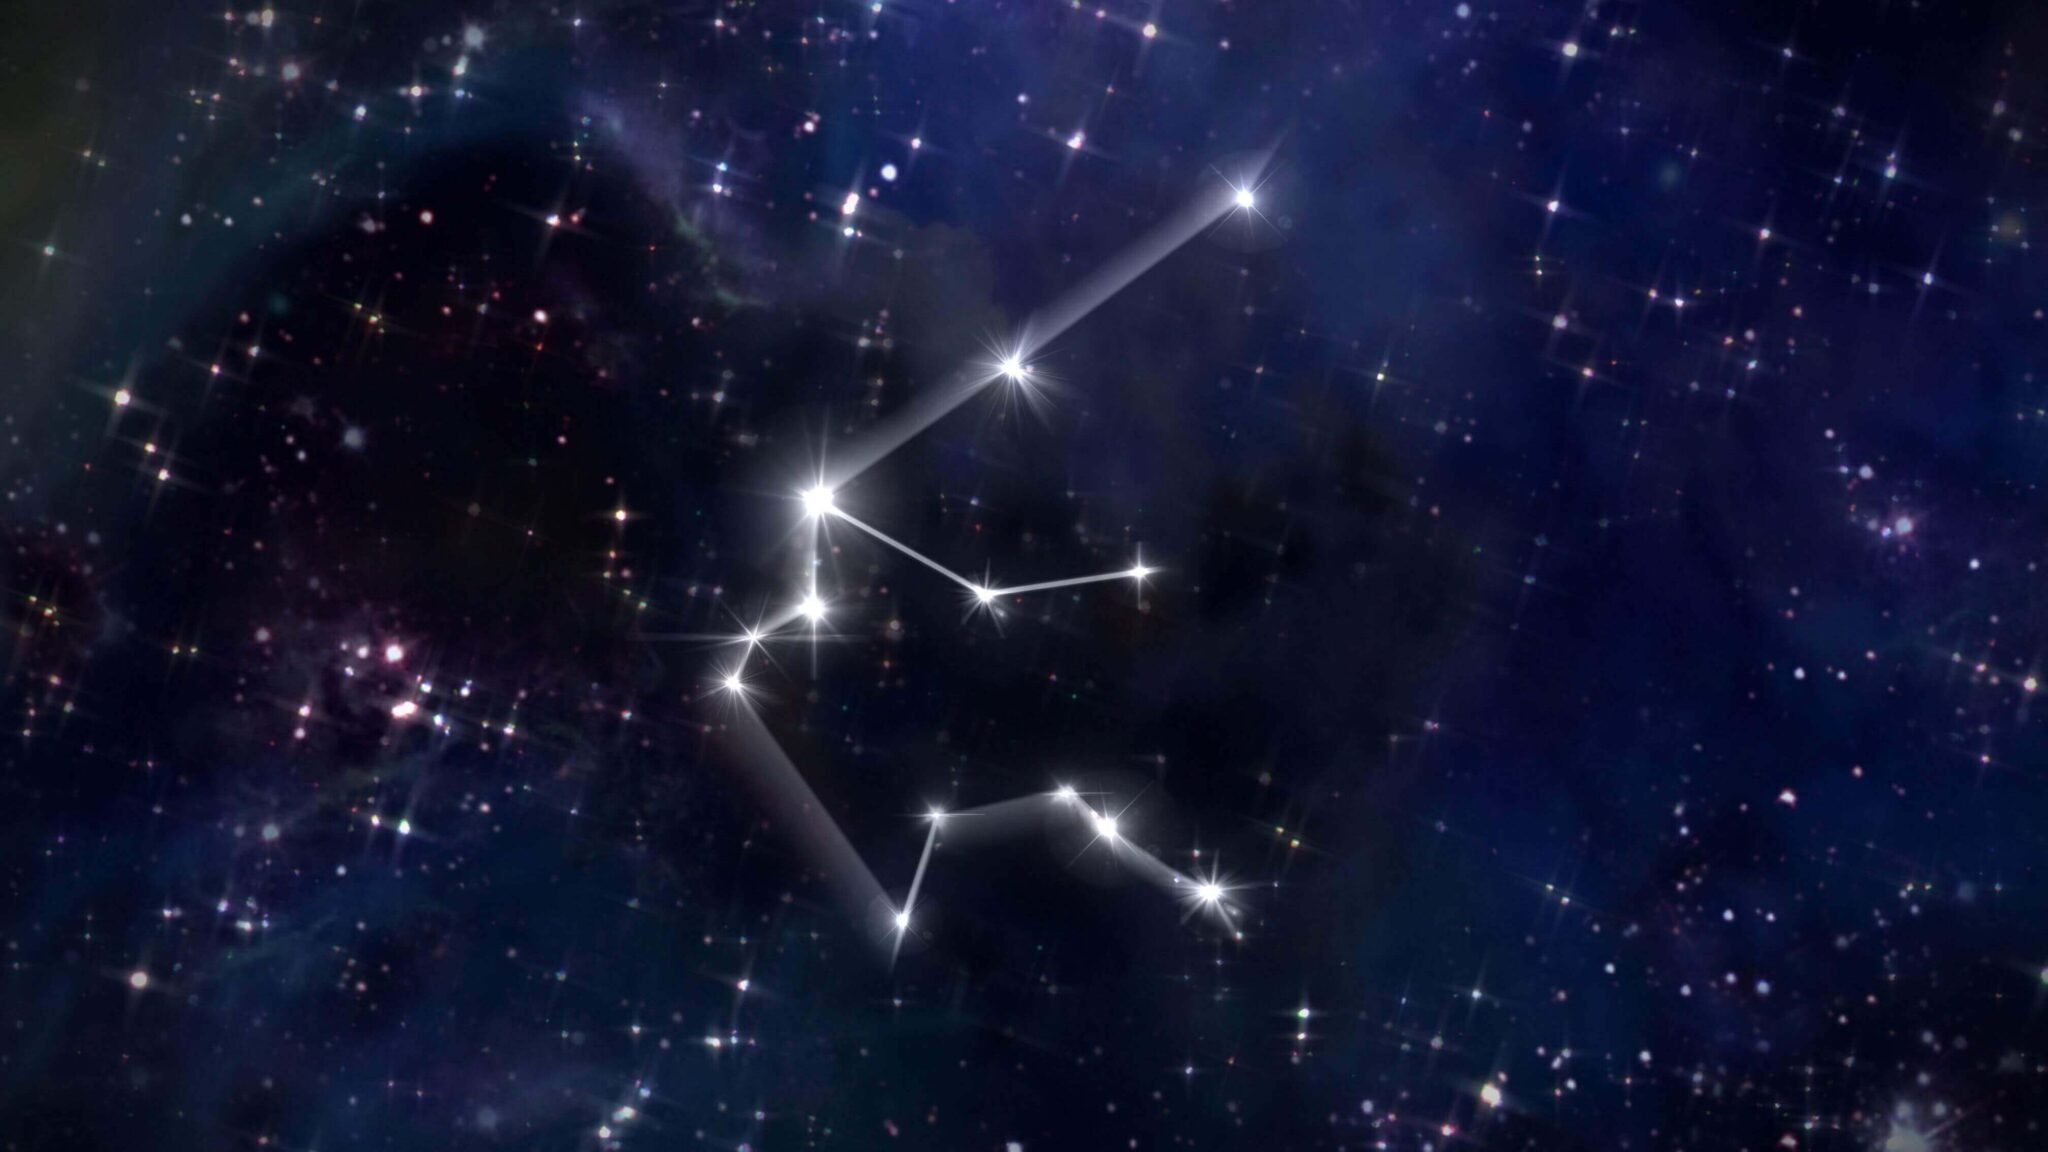 созвездие водолея картинки для детей звездного неба